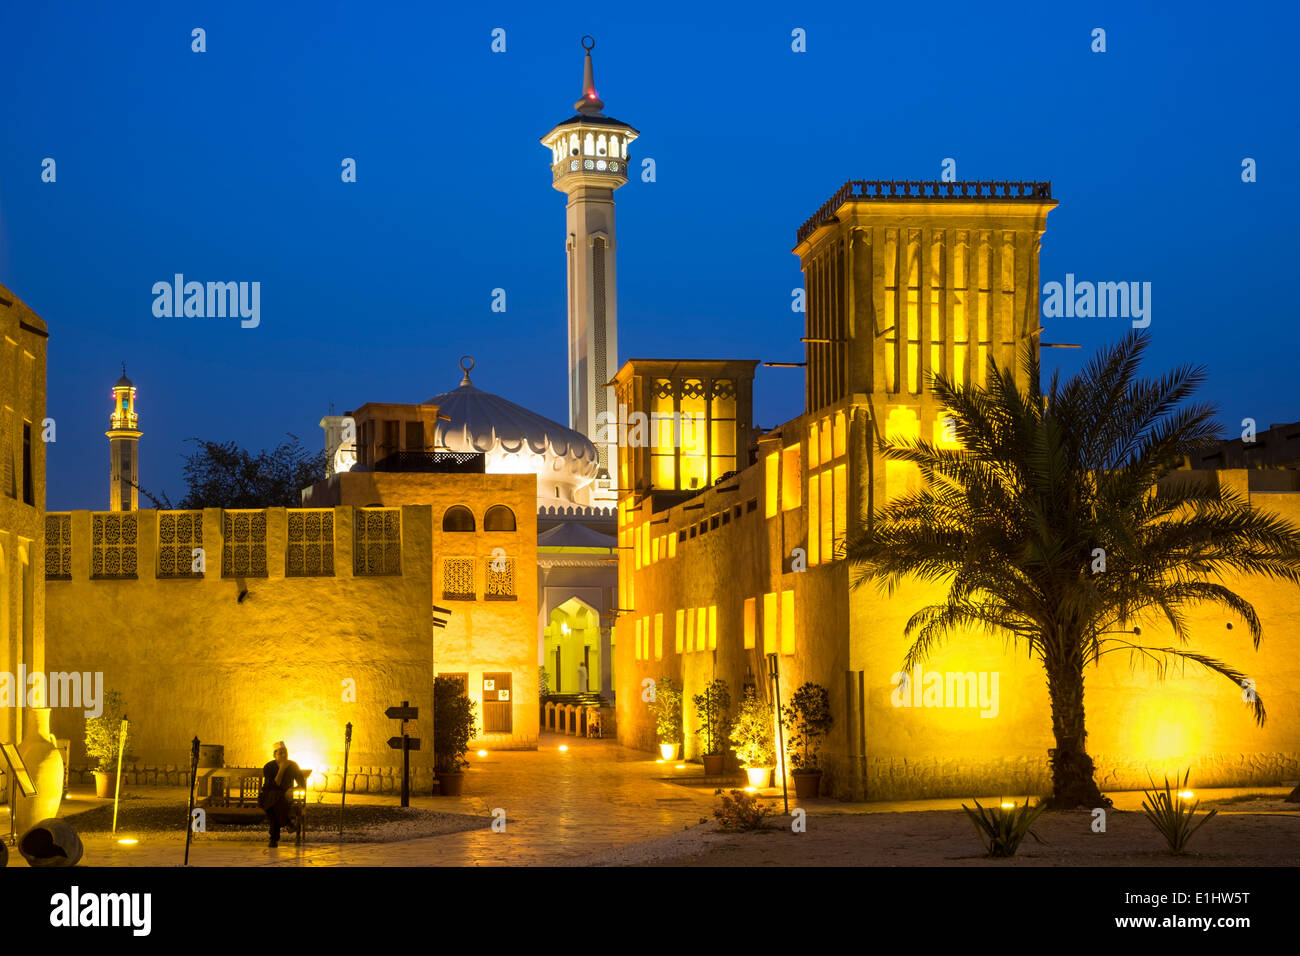 Night view of historic Bastakiya quarter at night in Dubai United Arab Emirates Stock Photo